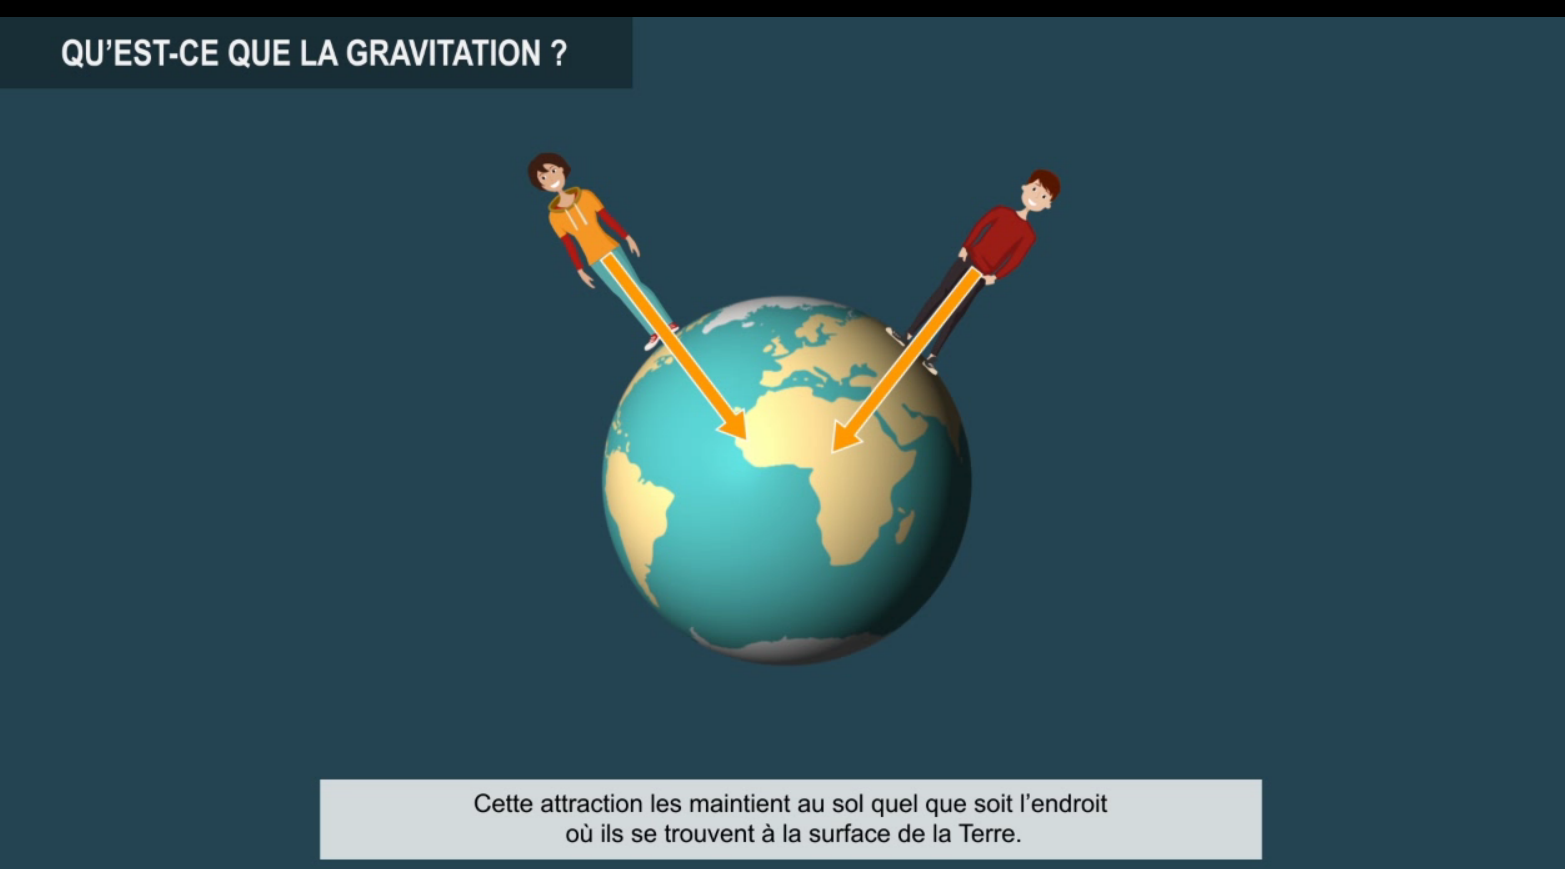 La gravitation